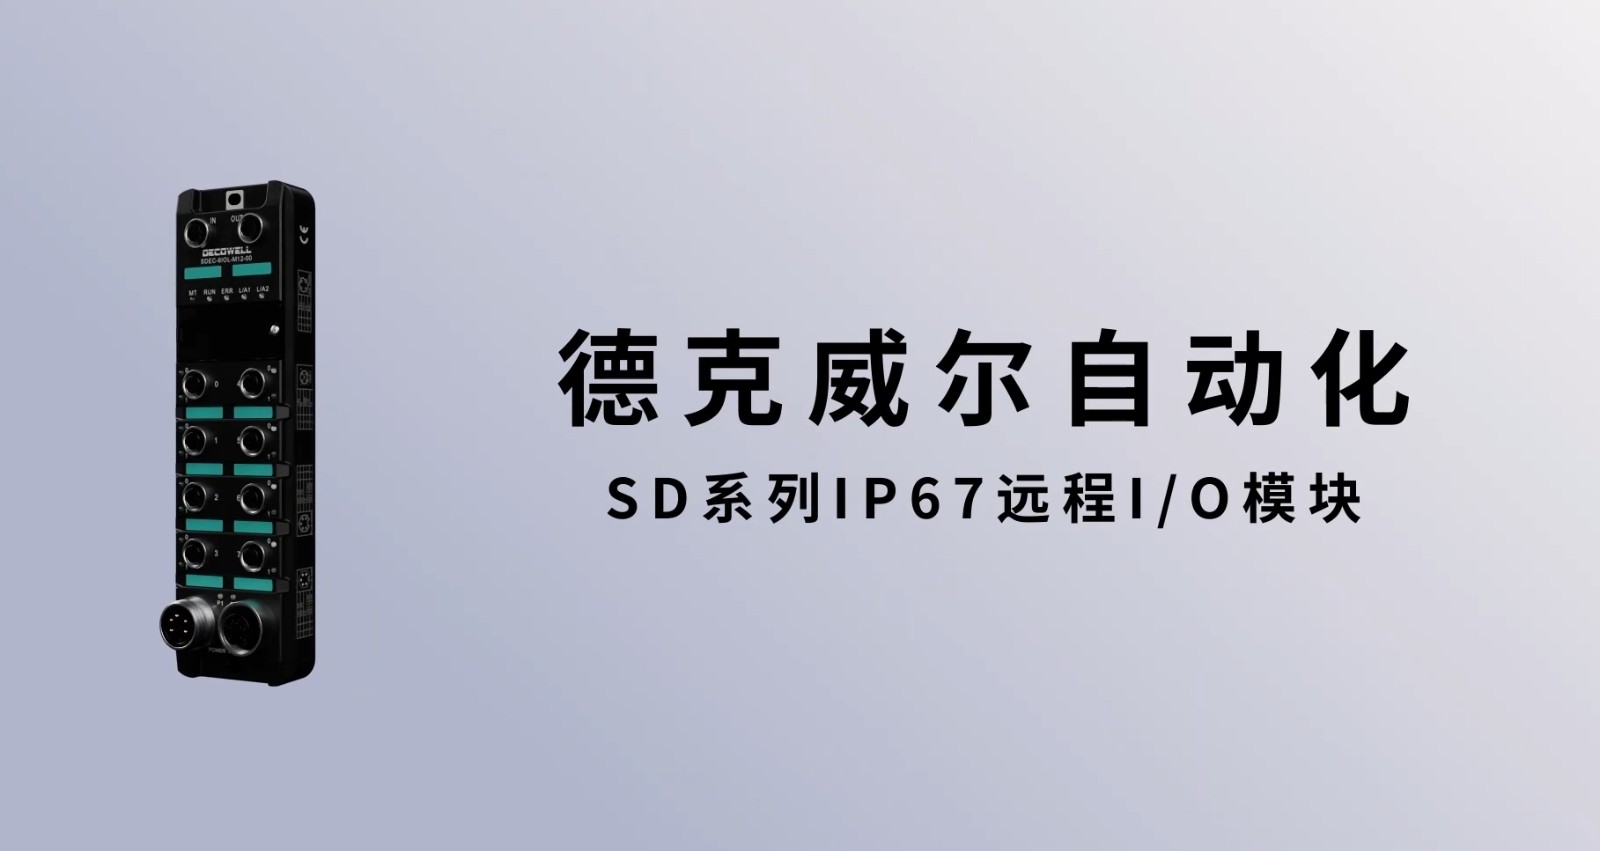 新品发布 | 德克威尔SD系列IP67 远程I/O